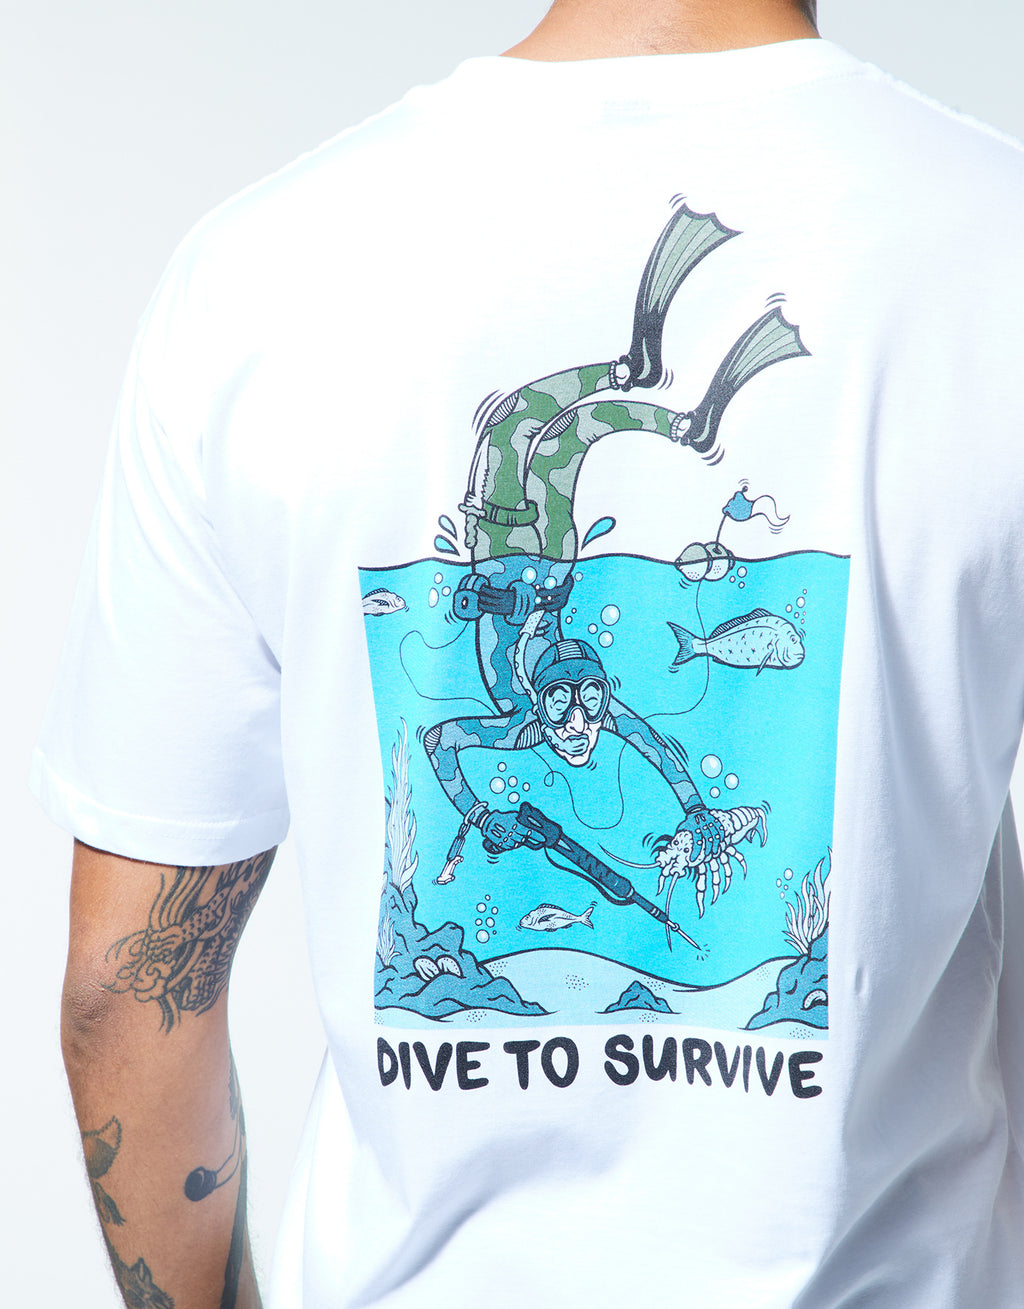 ''Dive to survive'' T-shirt